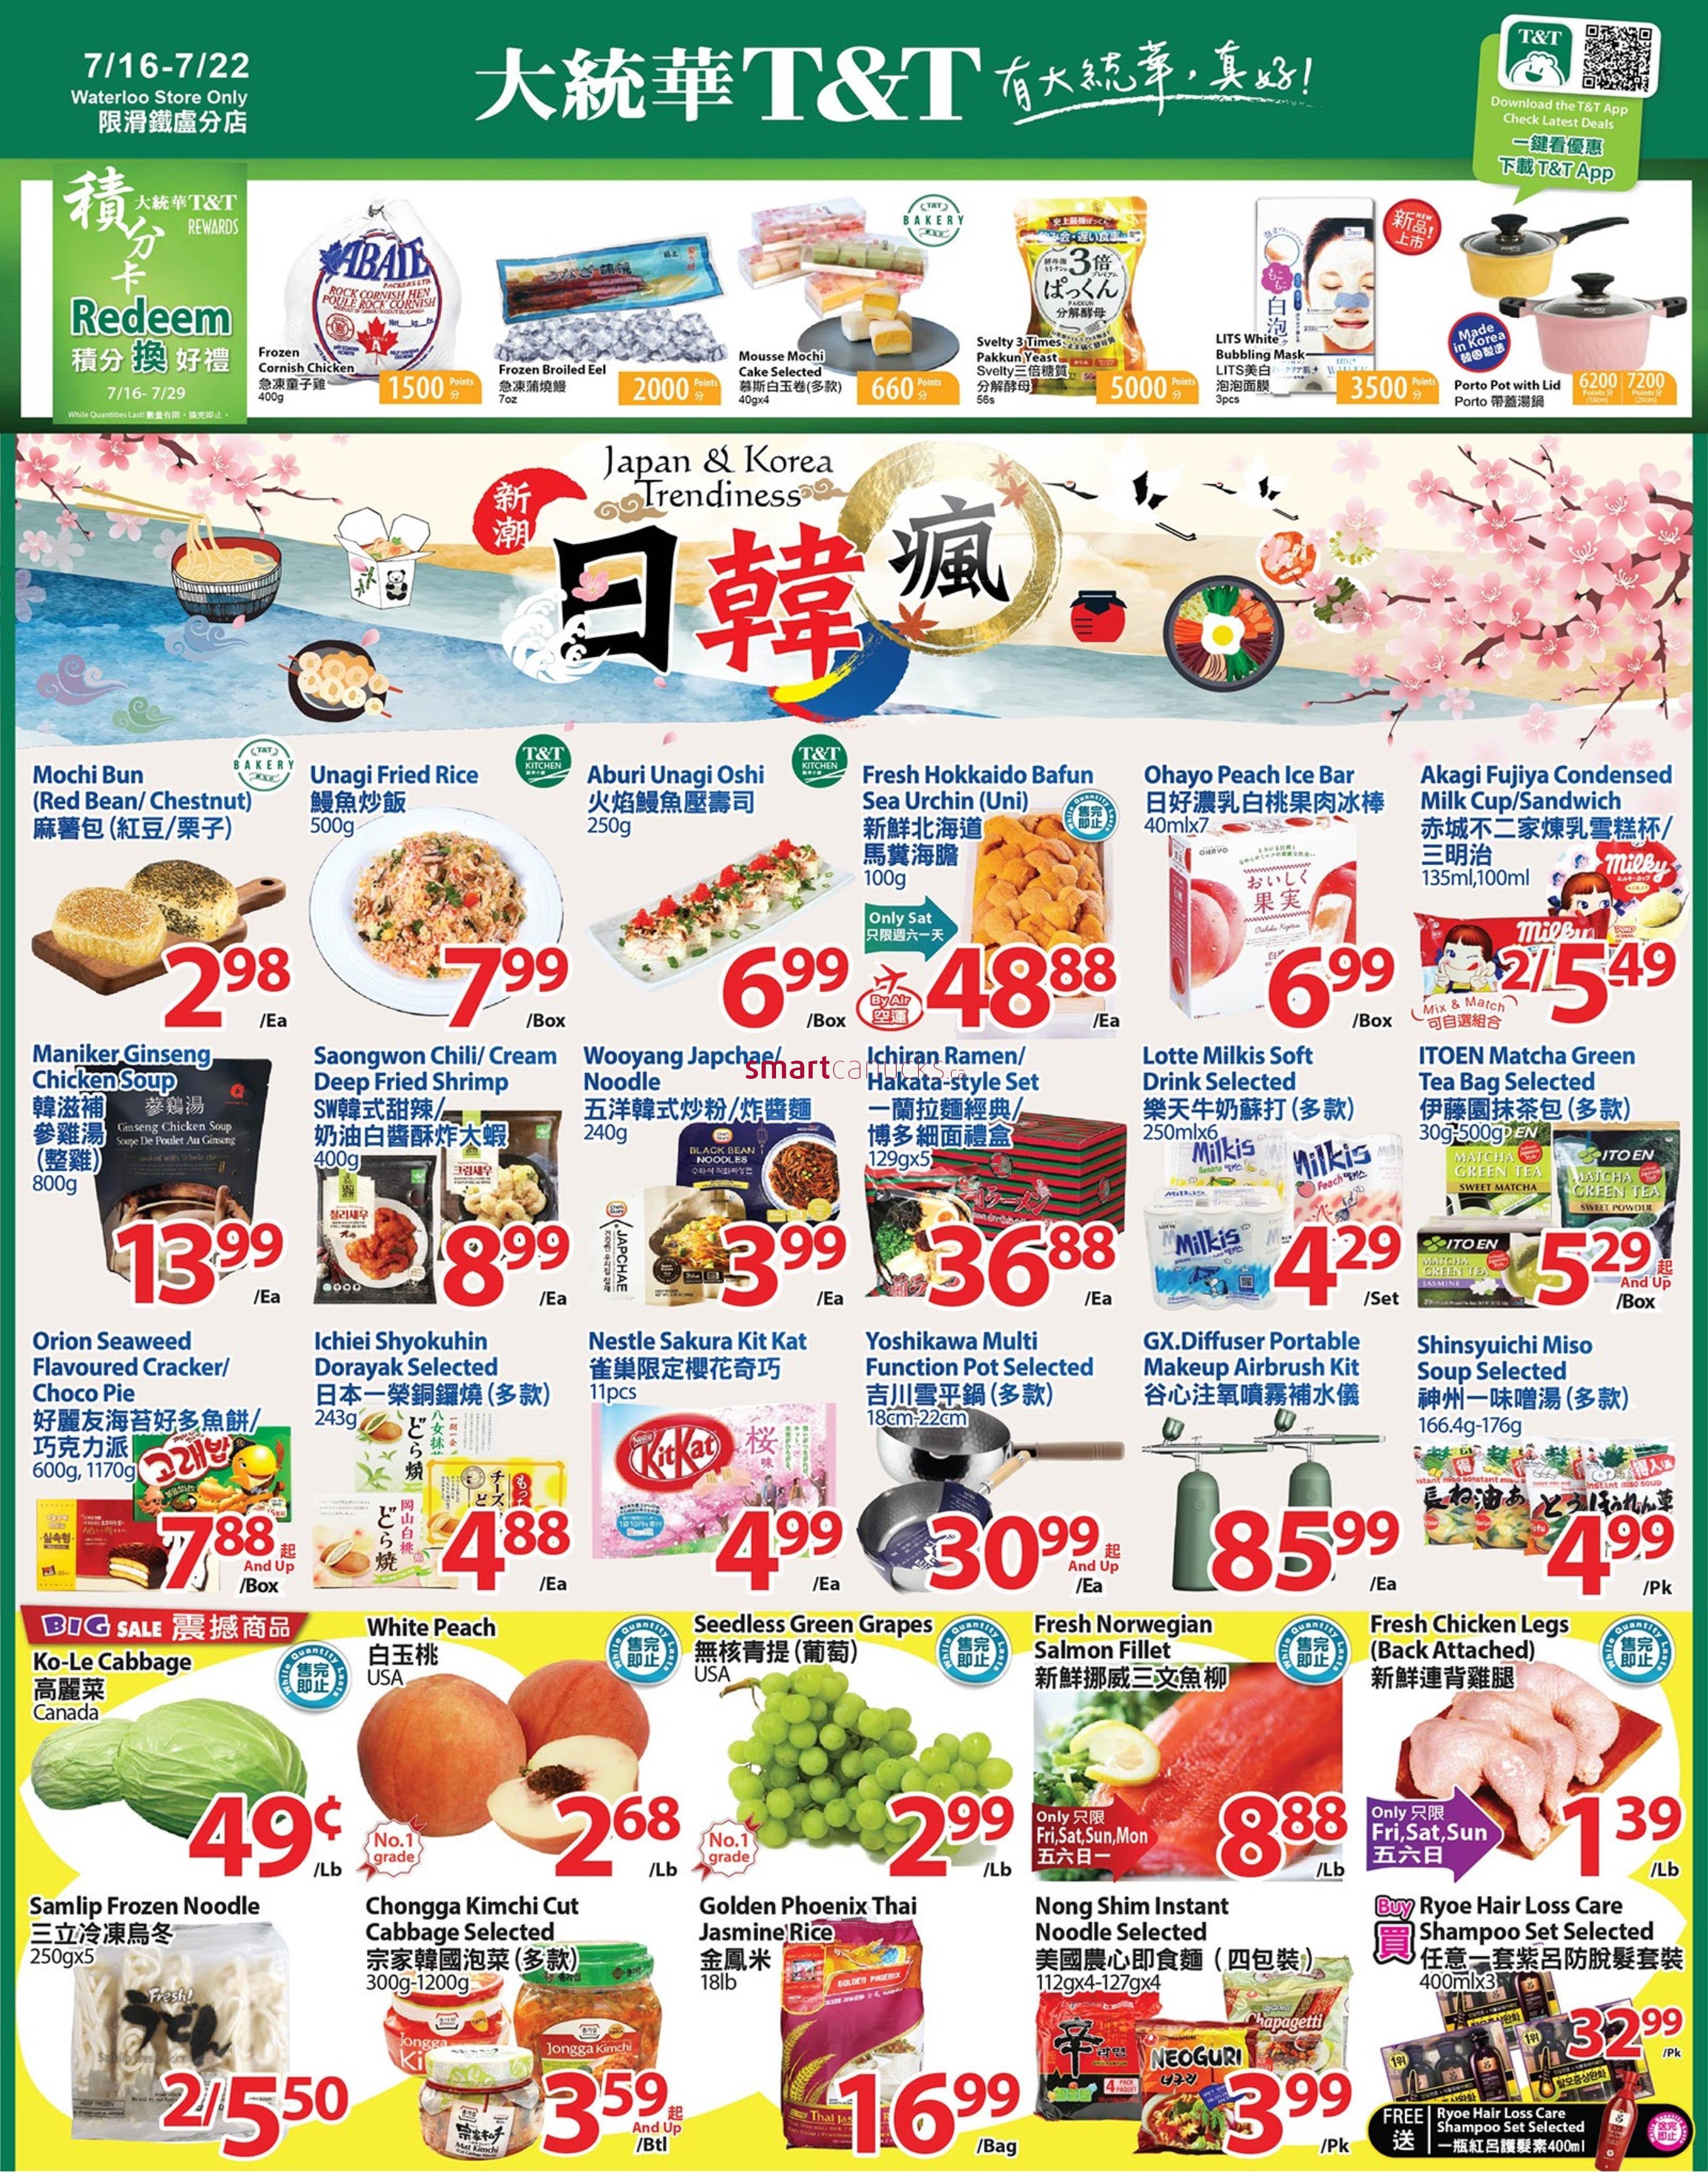 tt-supermarket-waterloo-flyer-july-16-to-22-1.jpg